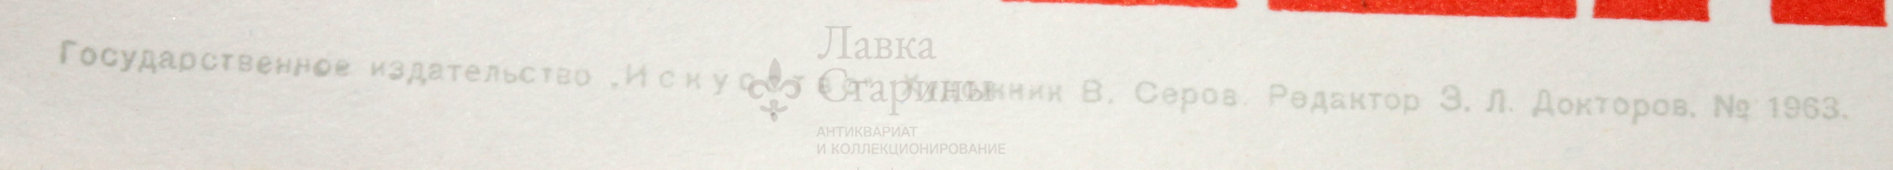 Советский агитационный плакат «Наше дело правое победа будет за нами», художник В. Серов, Москва, 1941 г., репринт 1970-е